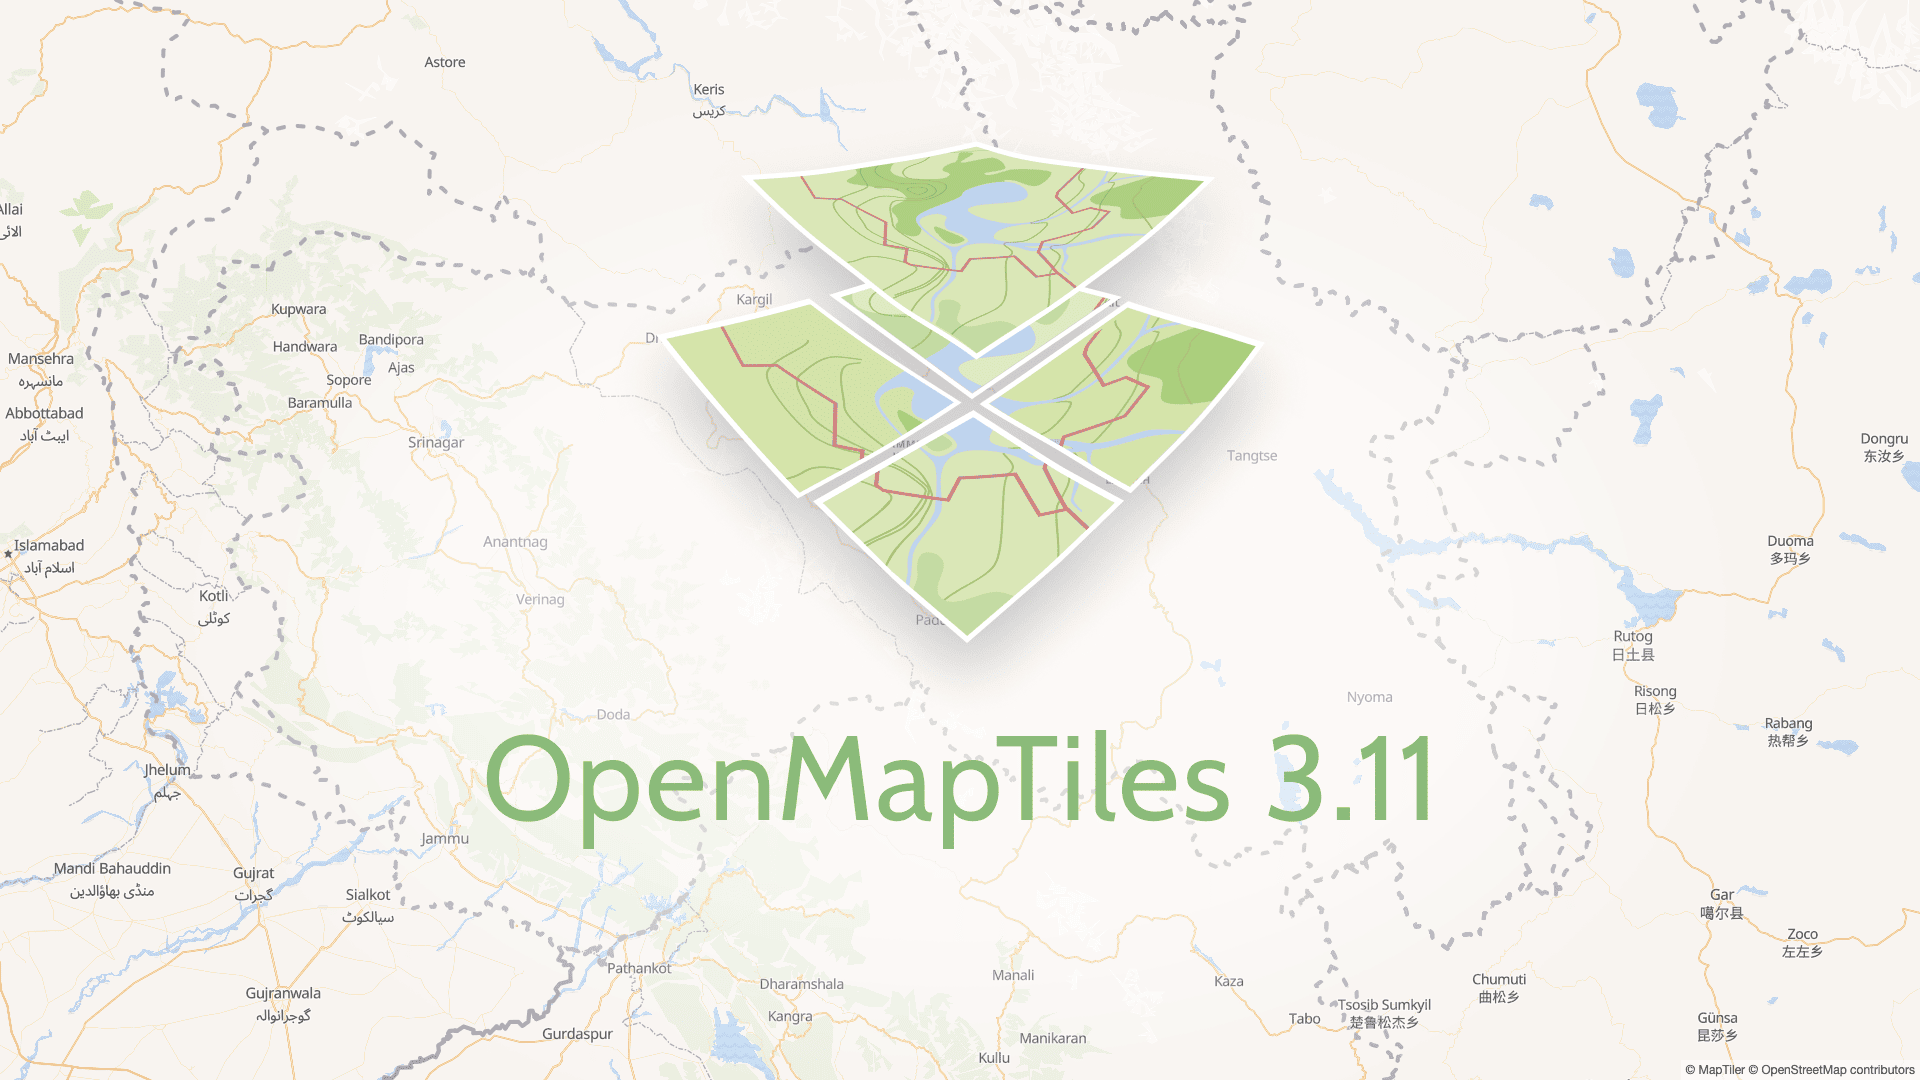 OpenMapTiles 3.11